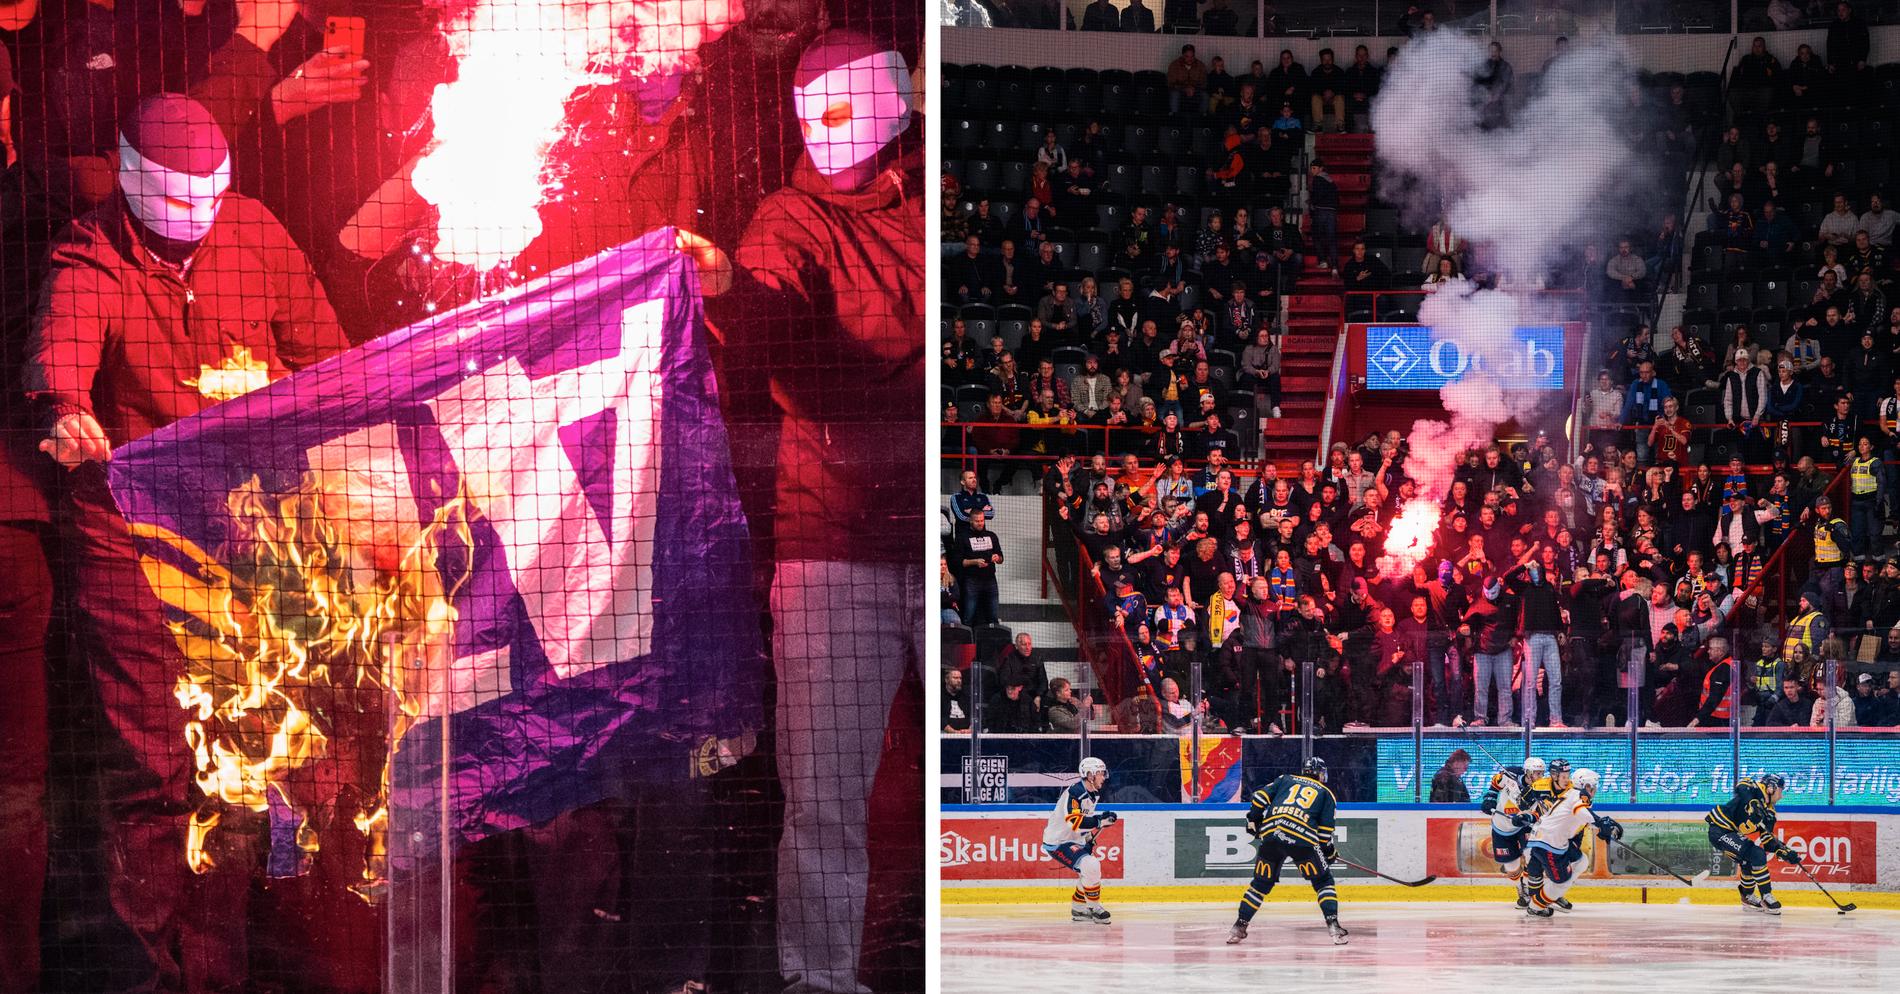 Supportrar brände flagga på läktaren i Södertälje.